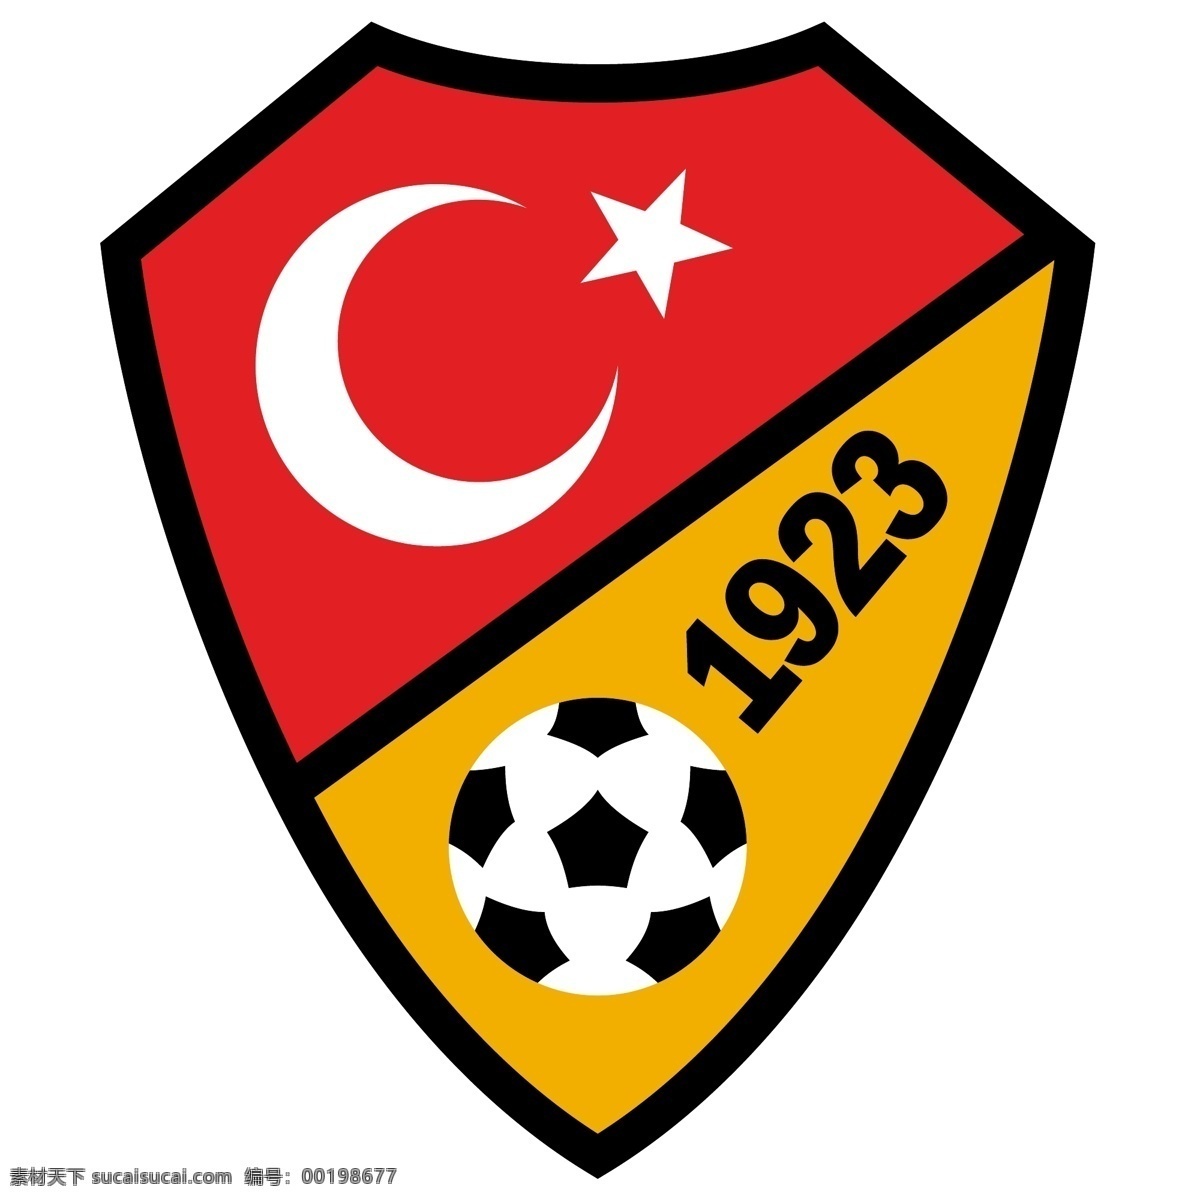 土耳其 足球 协会 标志 自由 psd源文件 logo设计